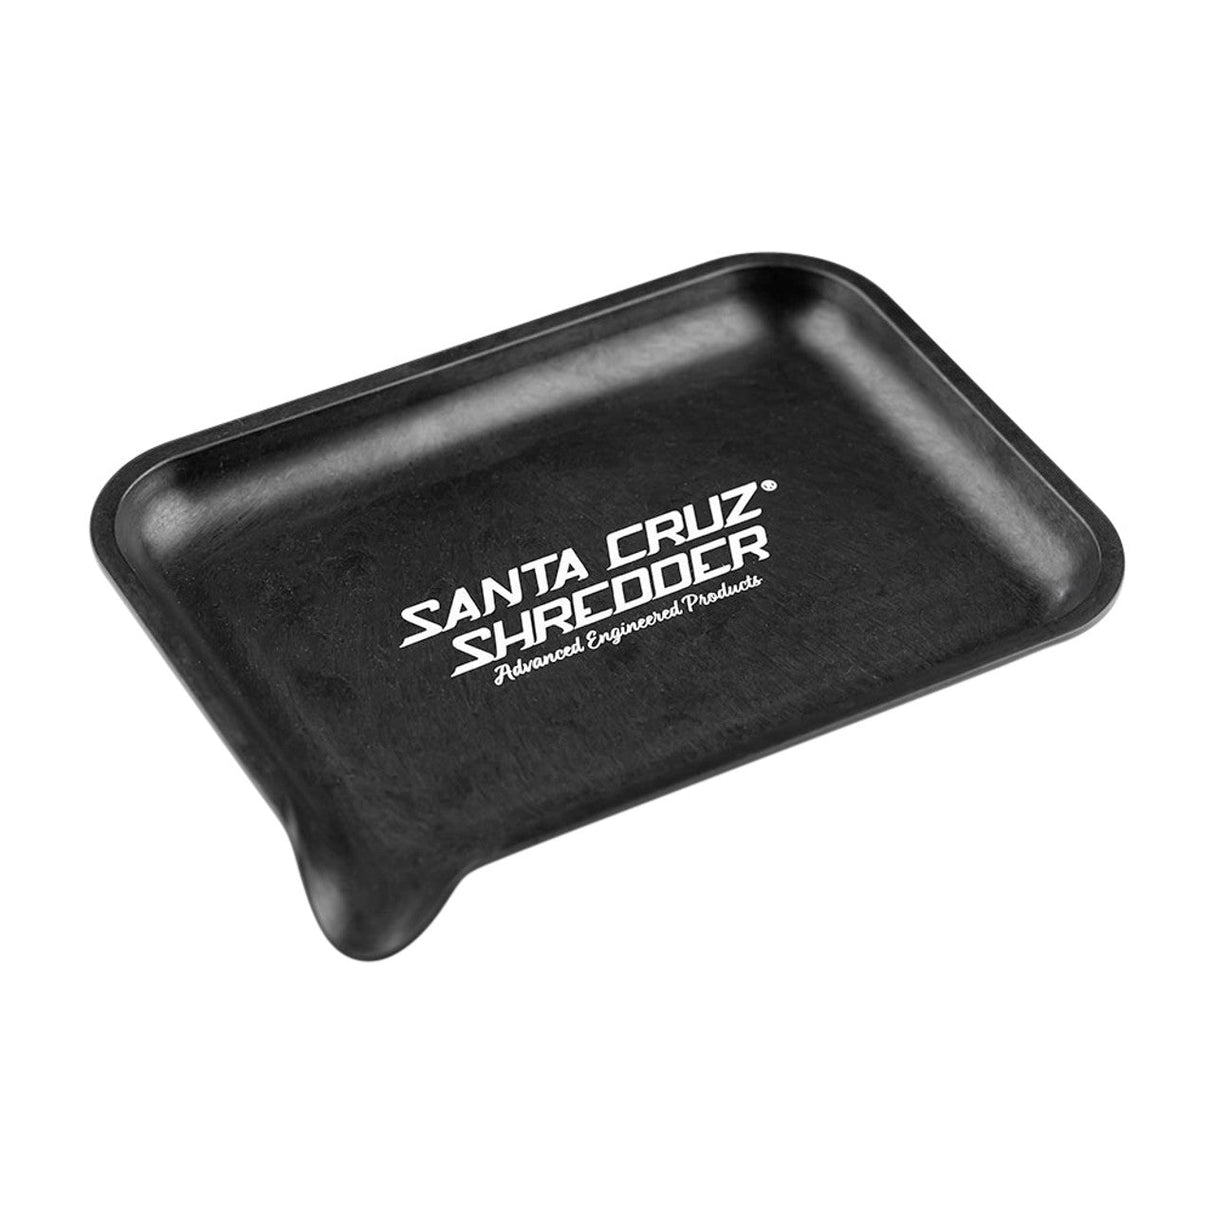 Santa Cruz Shredder Hemp Rolling Tray with SCS Logo, Compact Design, Eco-Friendly